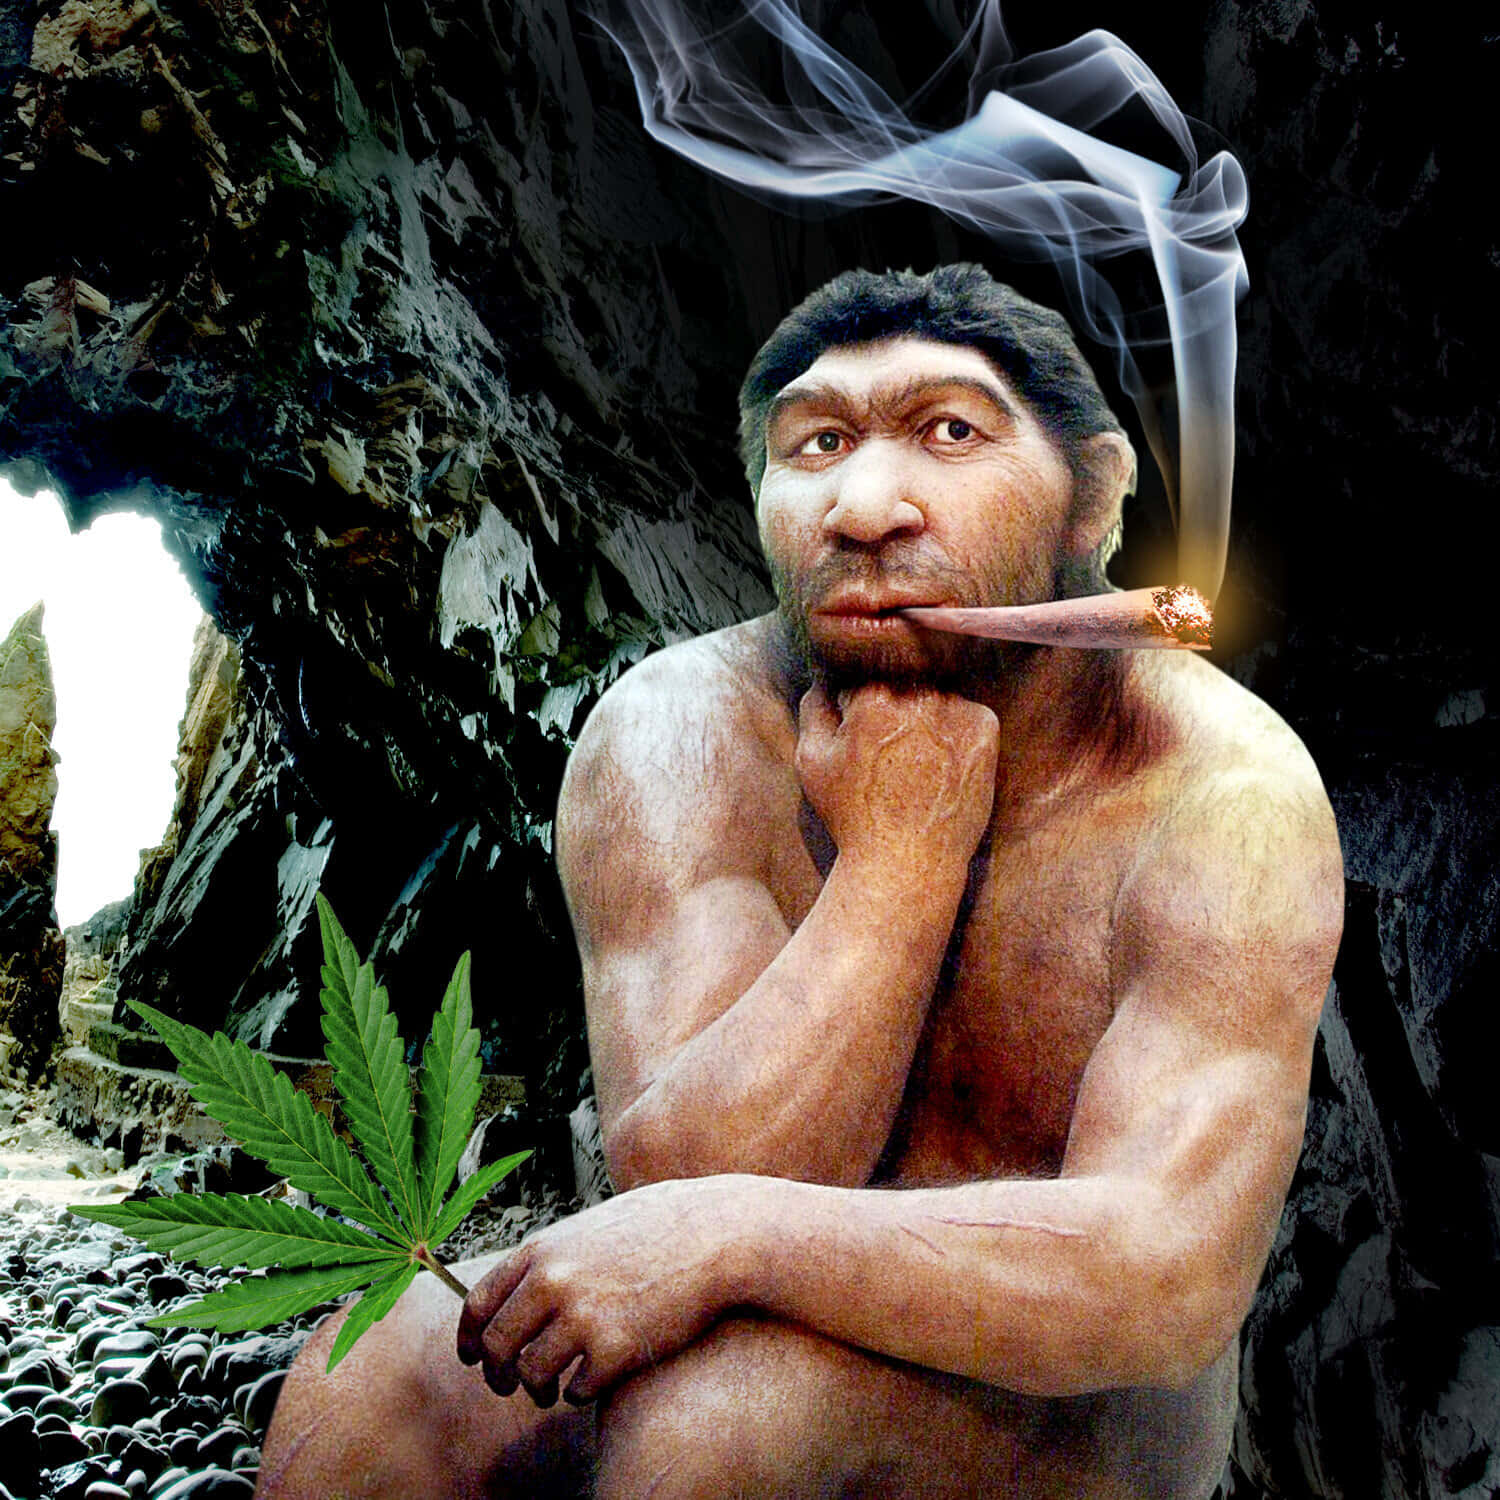 An Ancient Caveman